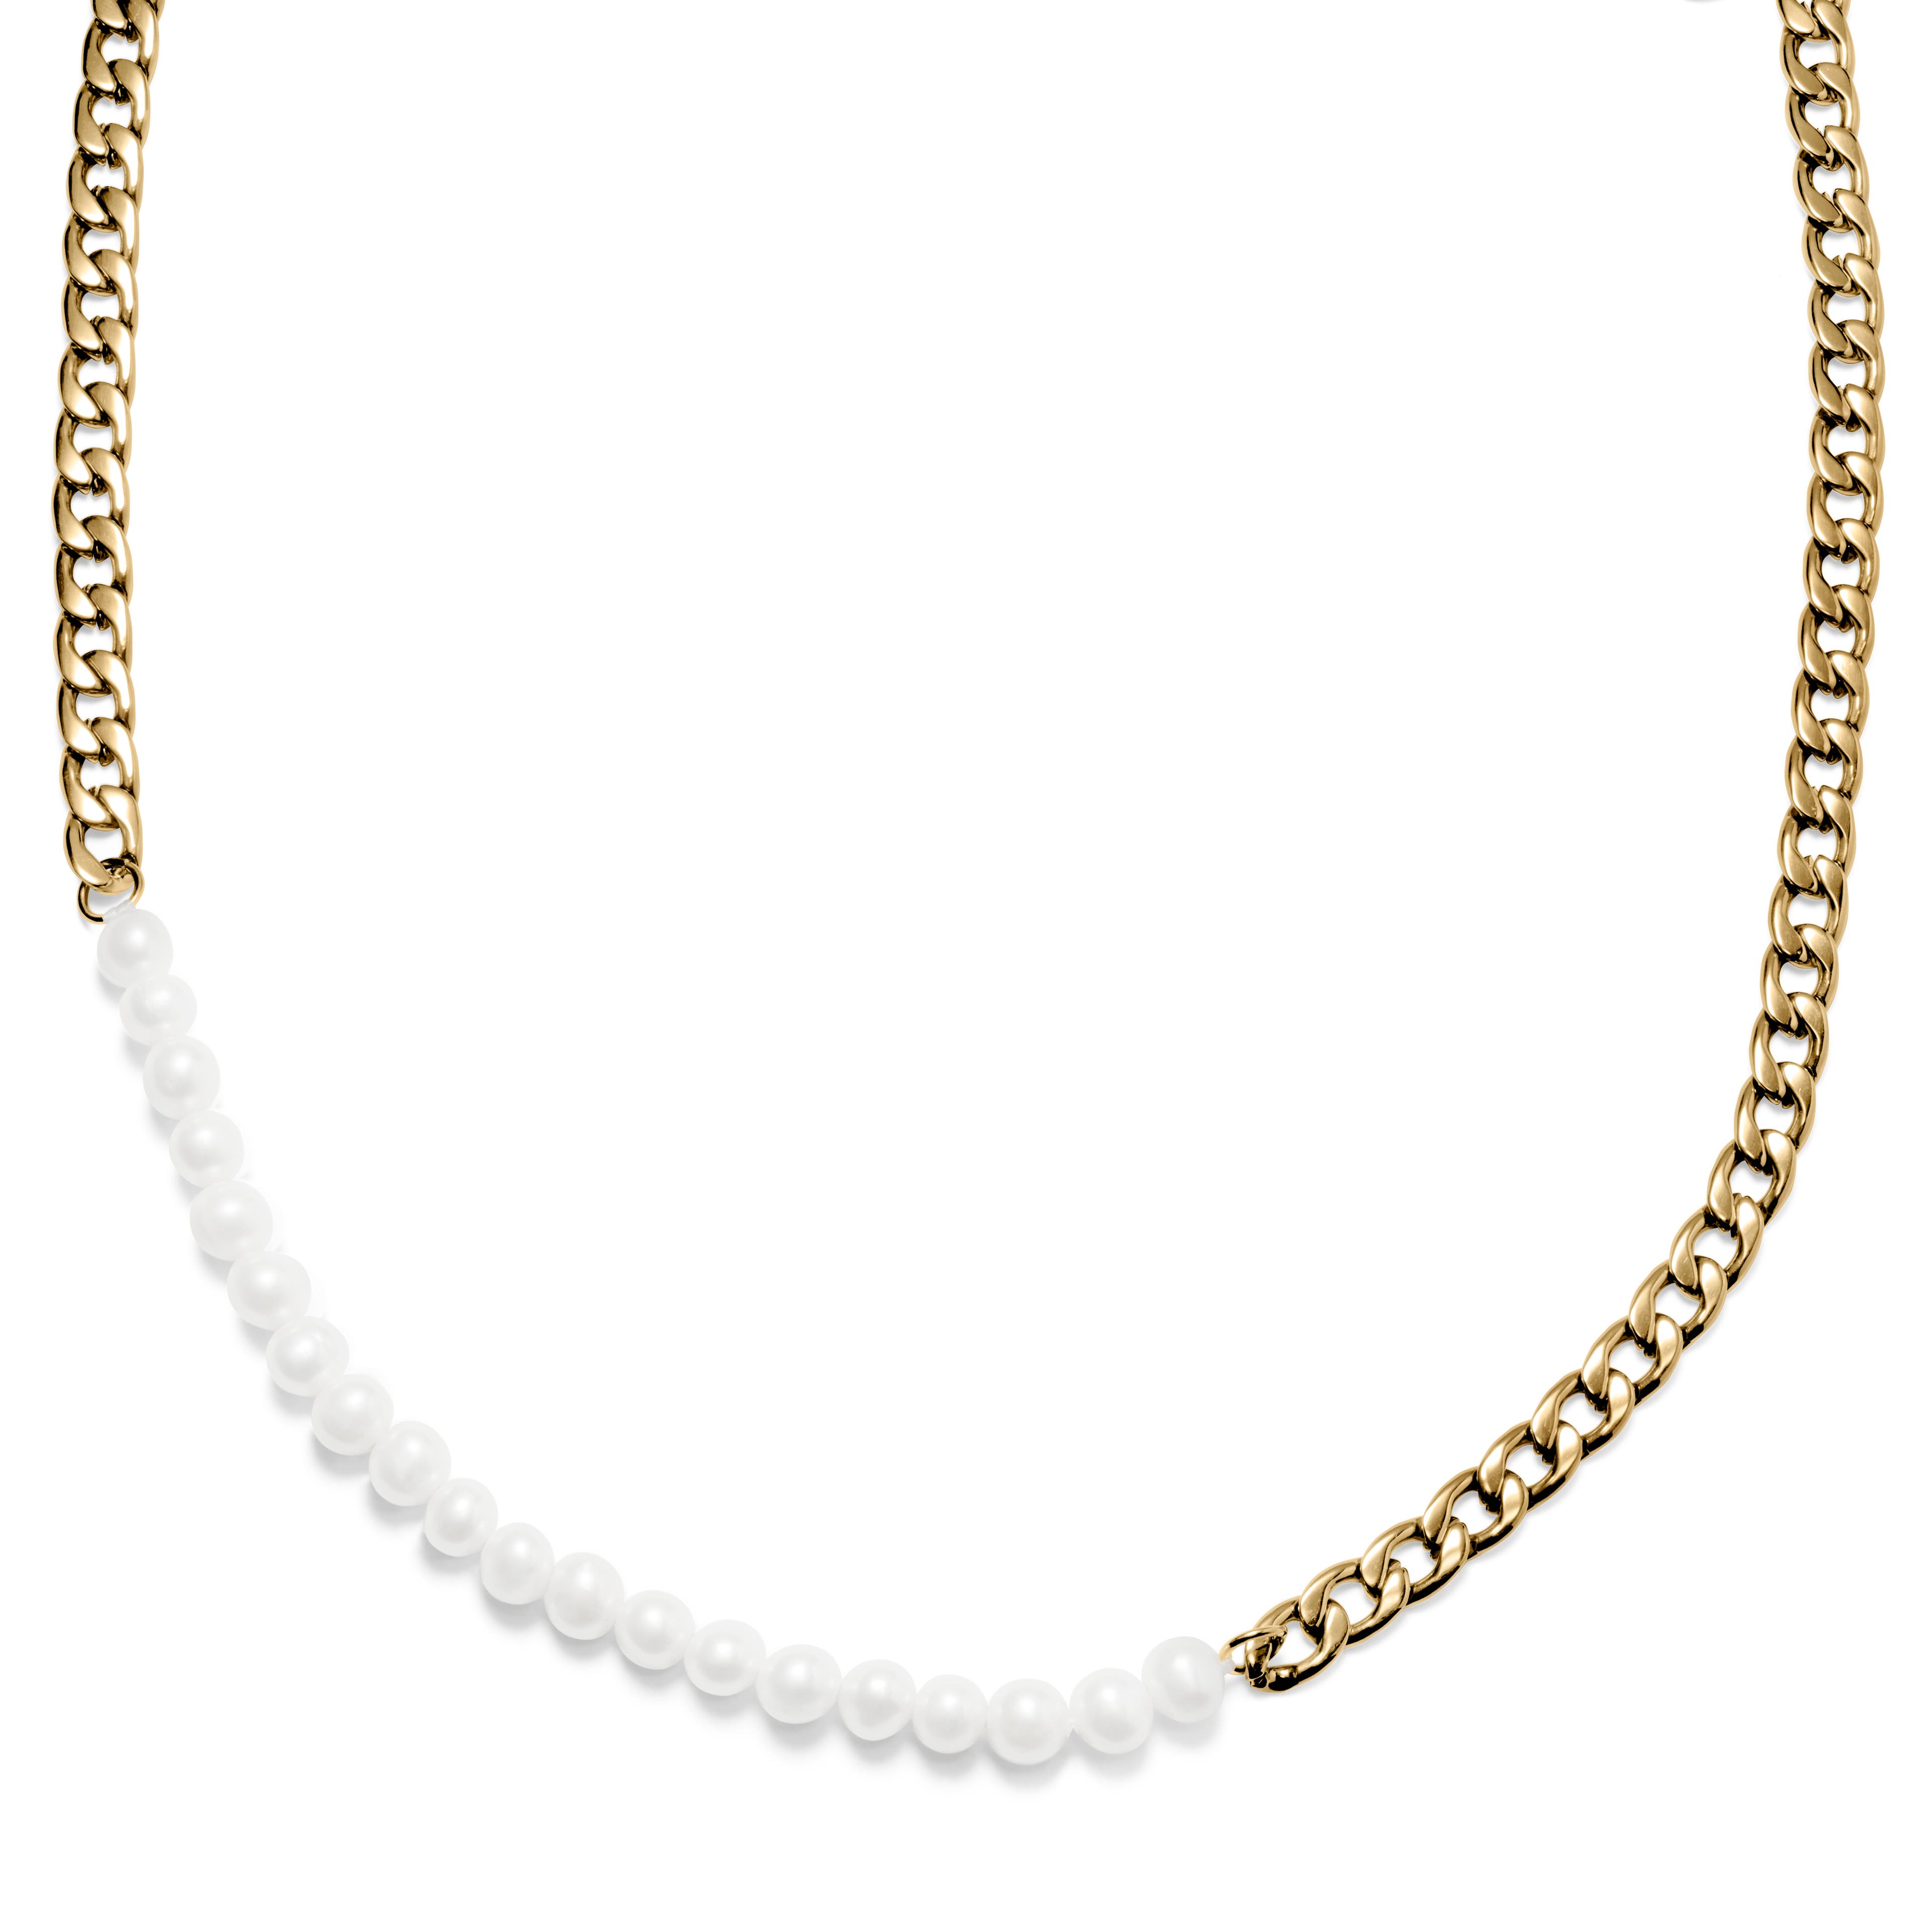 Naszyjnik z perłami i złocistym łańcuszkiem krawężnikowym Charlie Amager